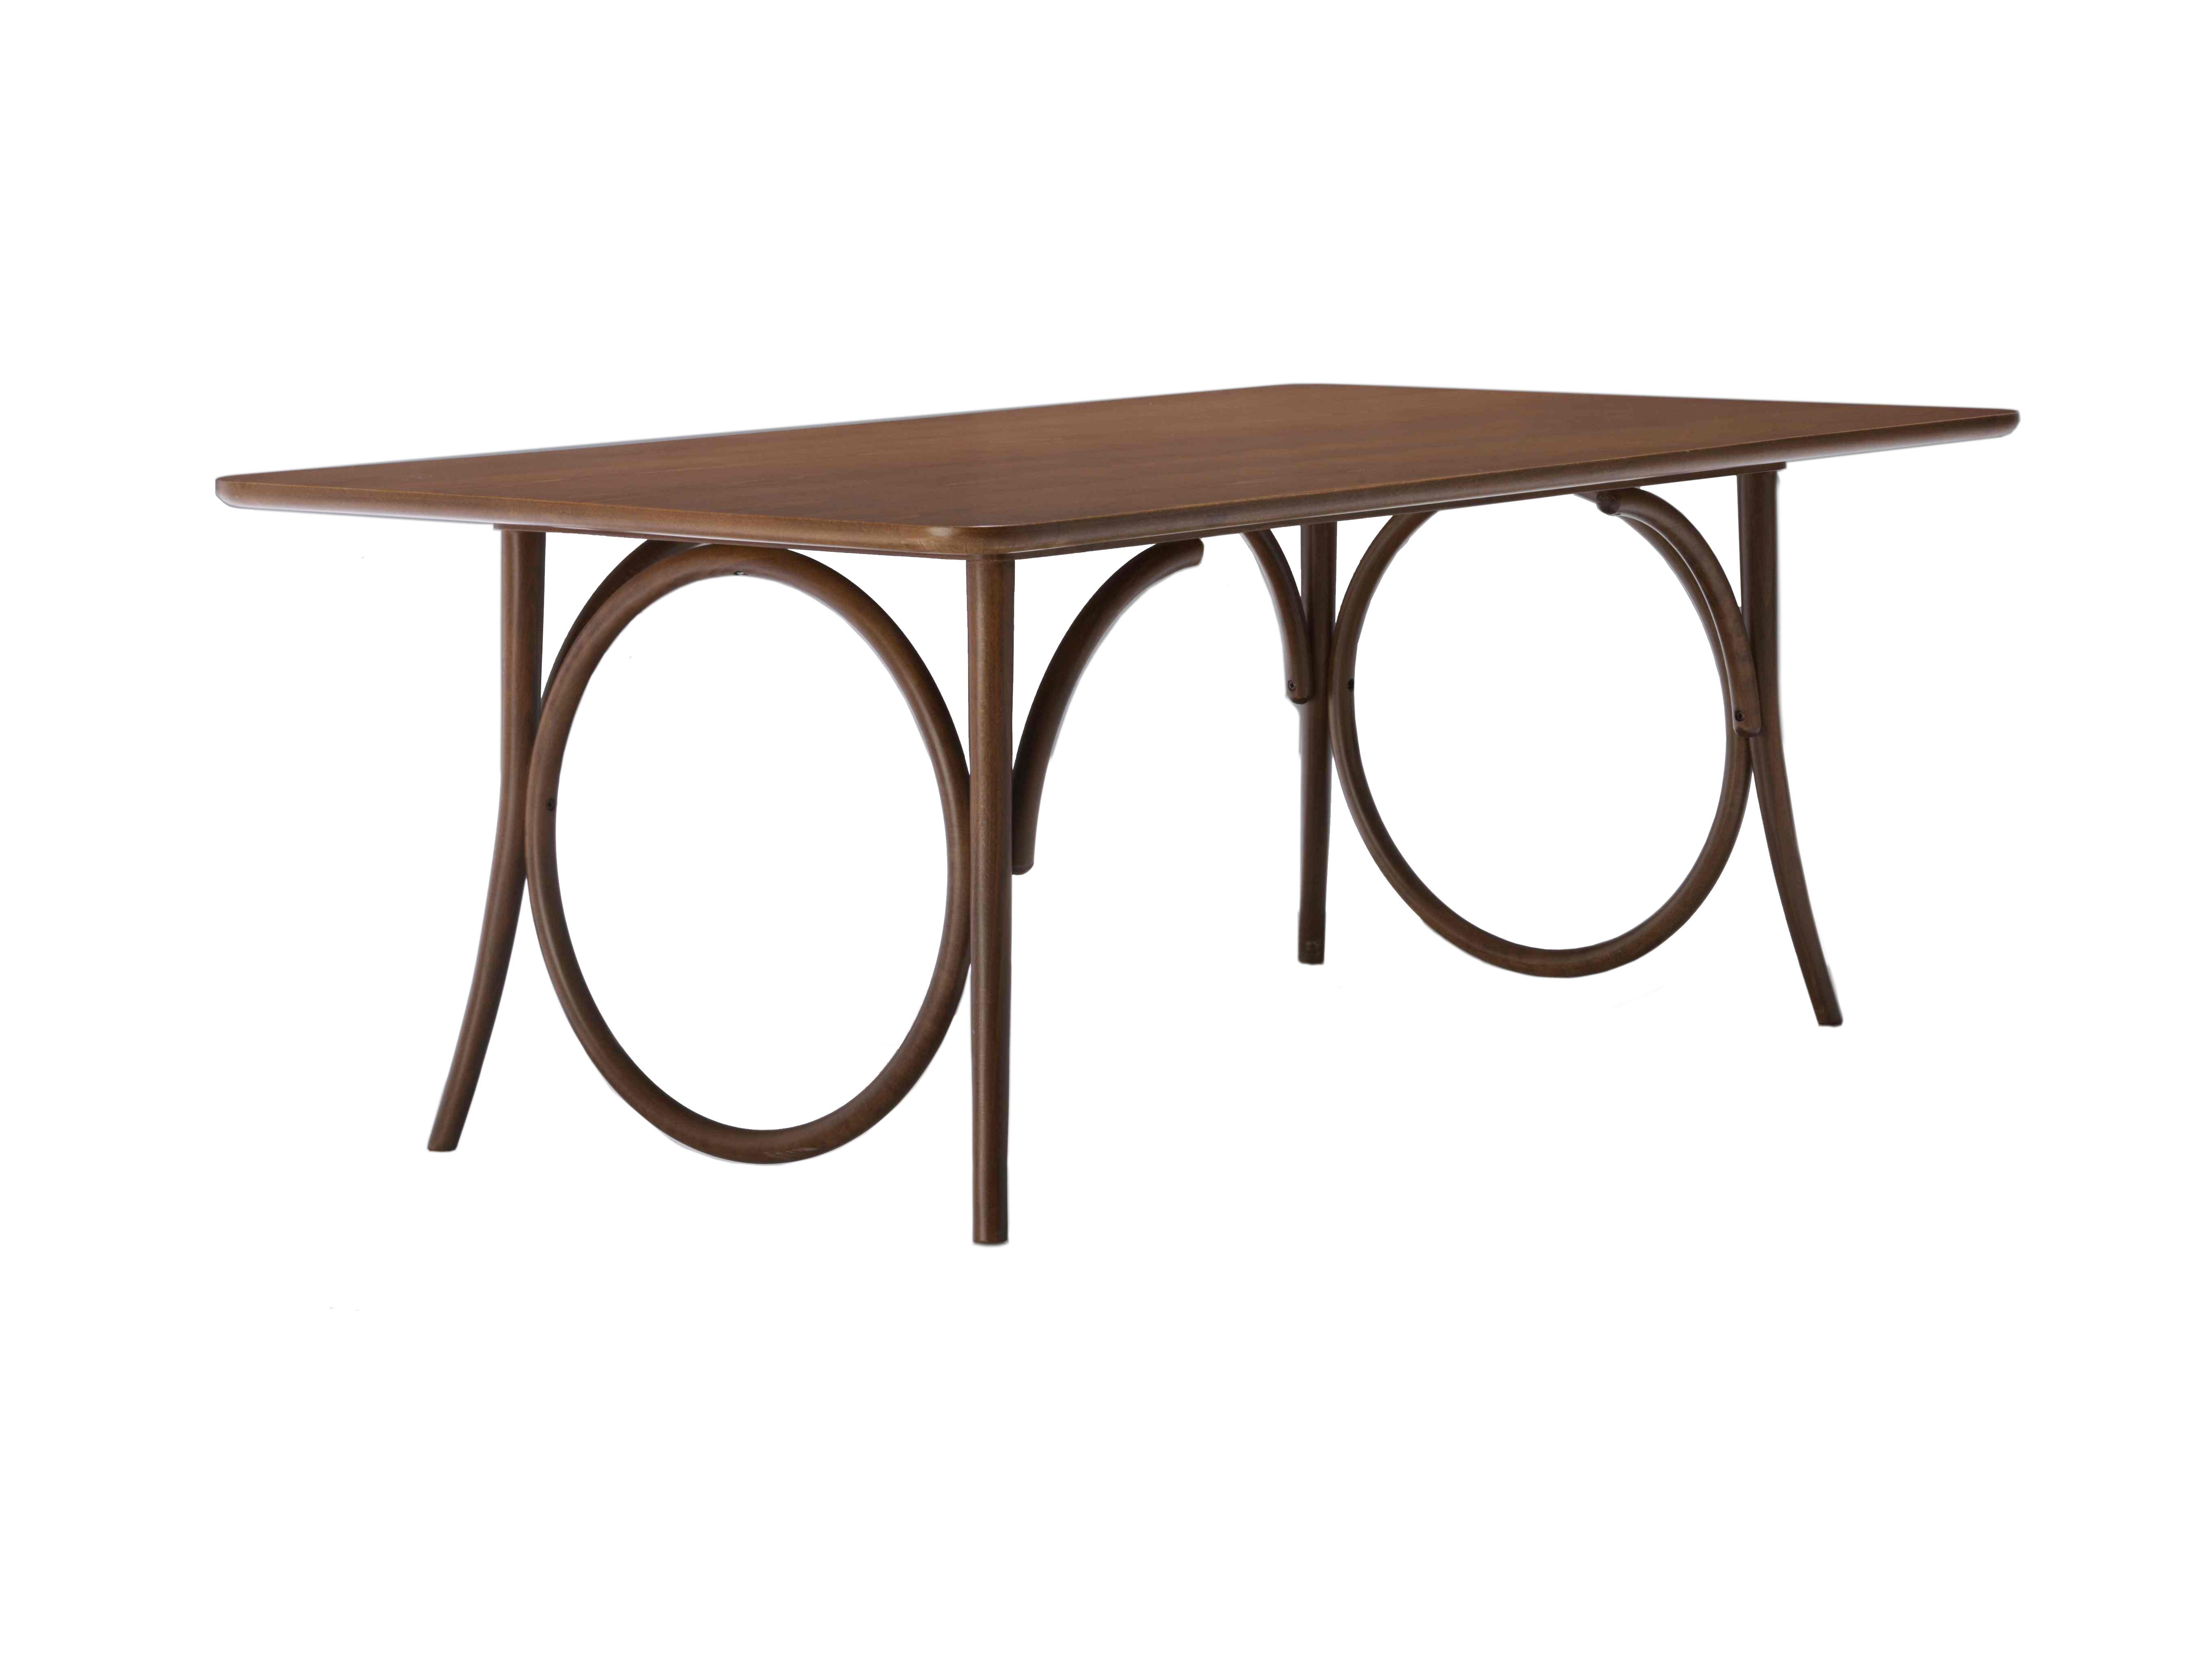 Wiener GTV Design bereichert ihr Einrichtungsvorschlag für das Esszimmer mit dem großen Tisch Ring Esstisch, der sich durch eine leichte und elegante Struktur auszeichnet, die stilistischen Merkmale der Marke mit einer neuen Überschwänglichkeit